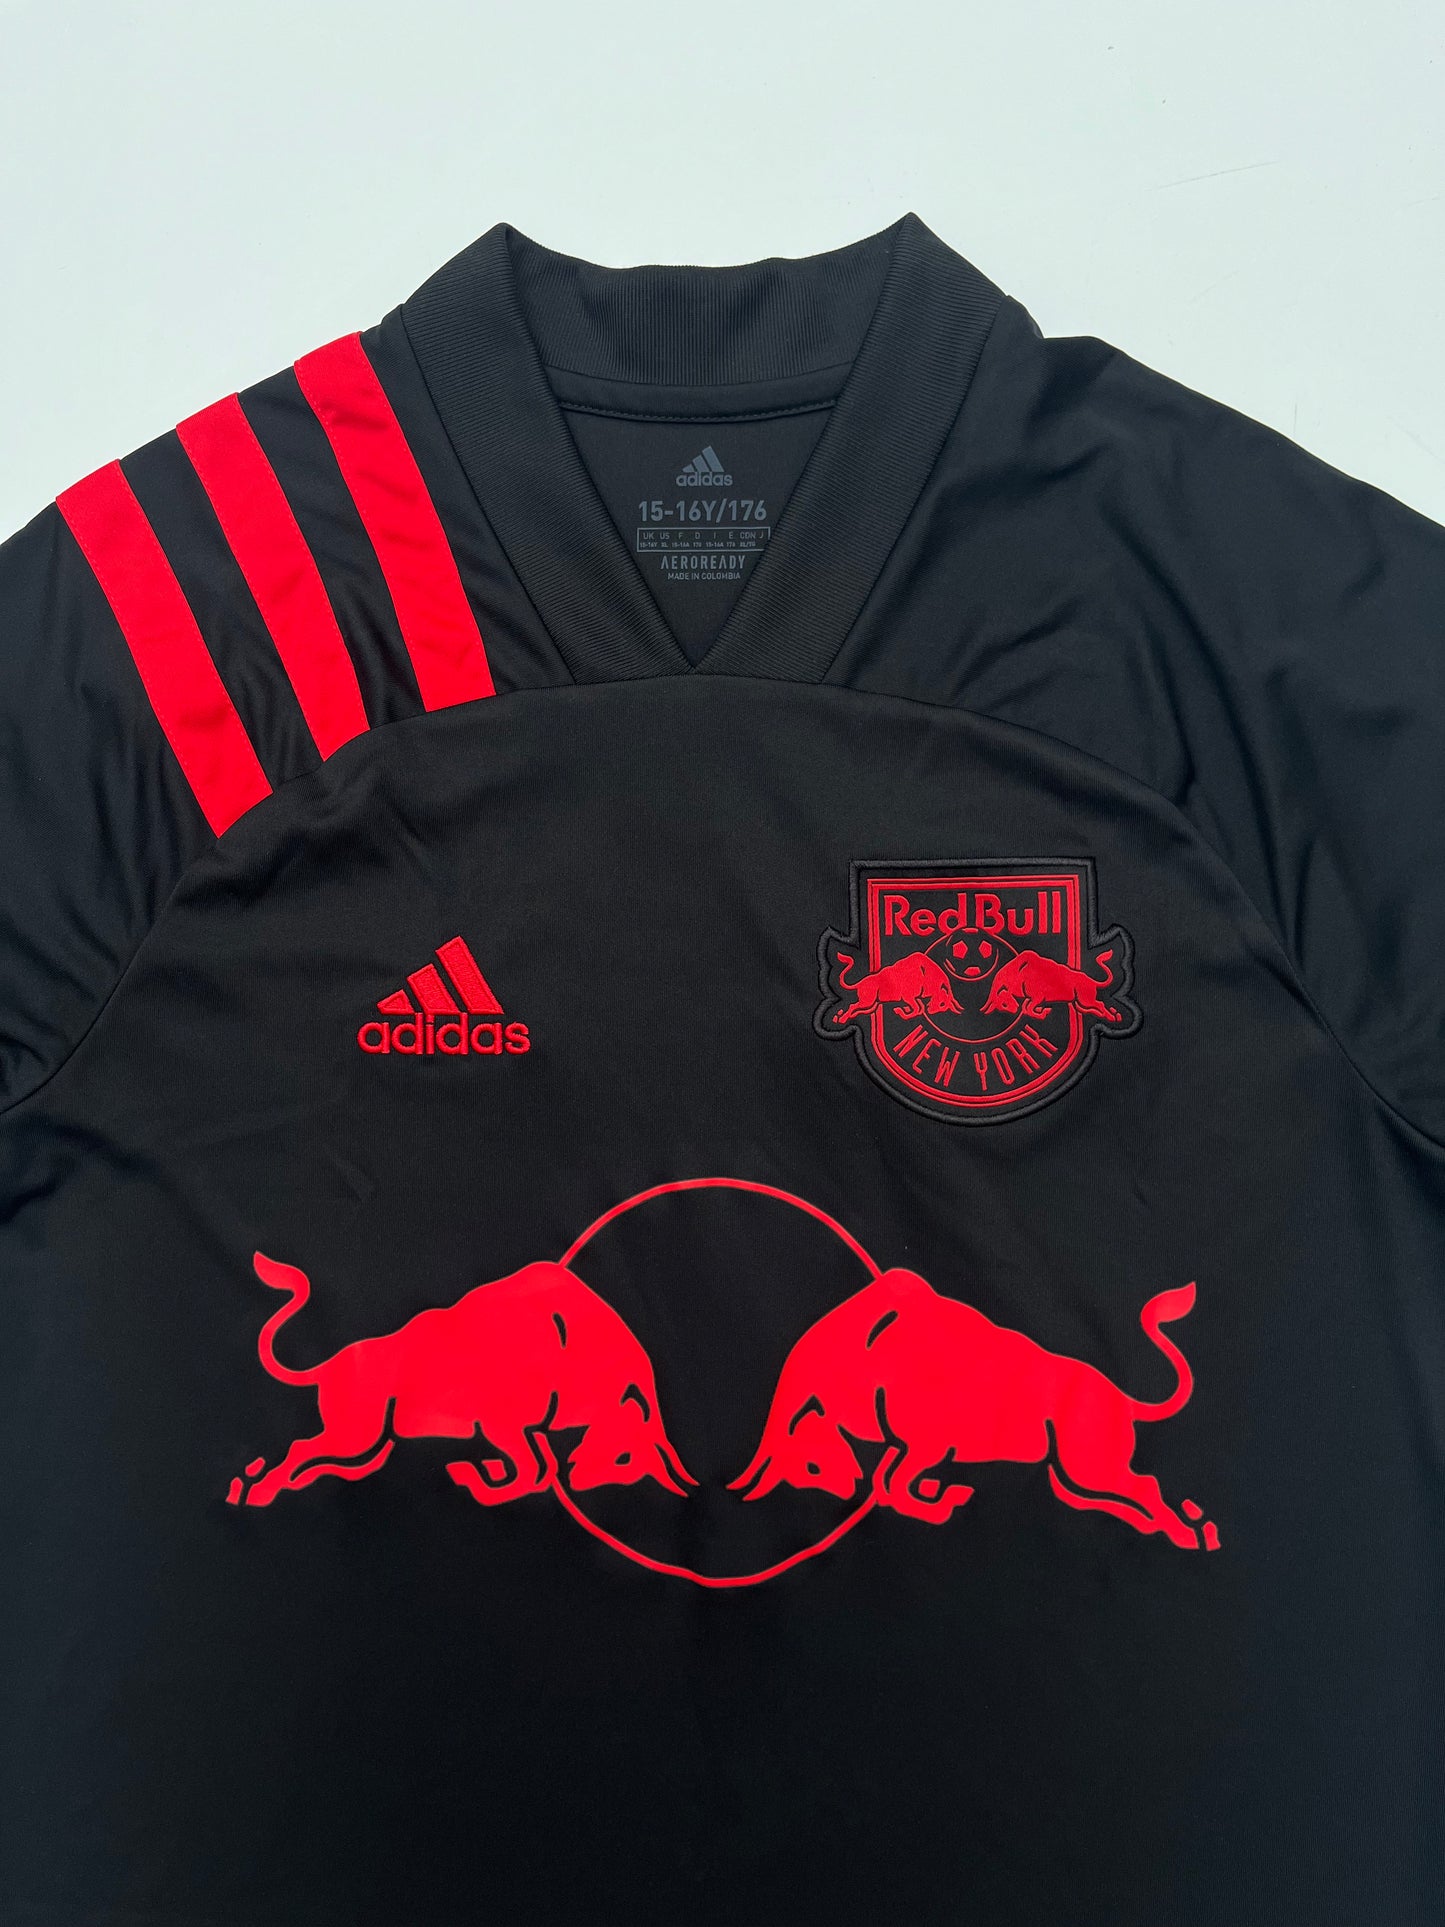 New York Red Bulls 2021 Away Kit